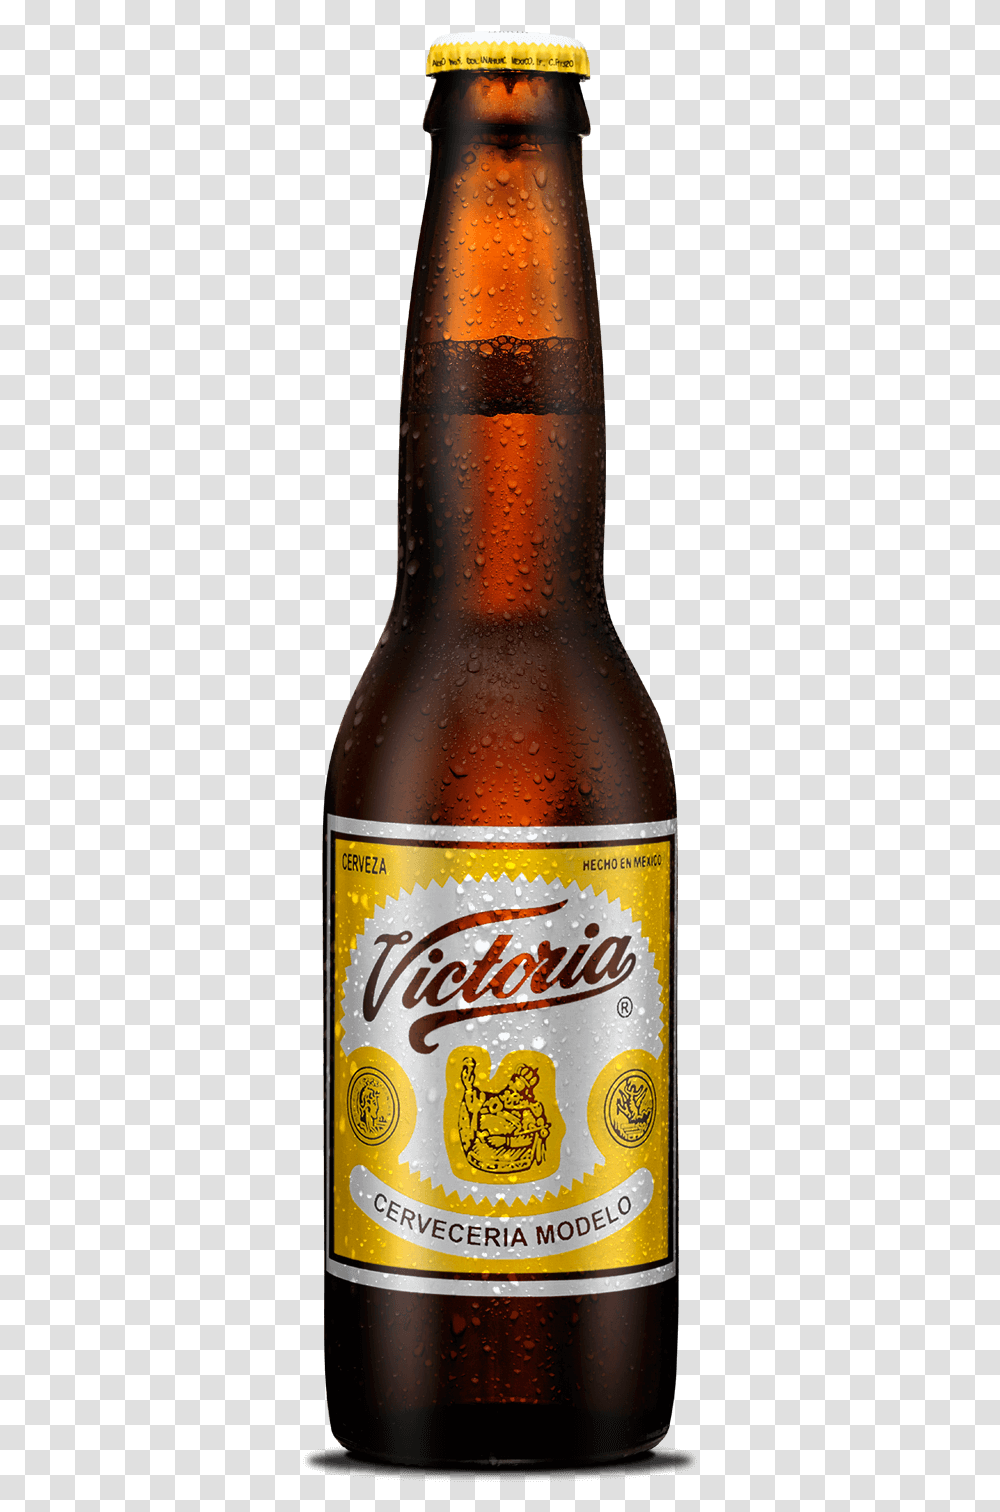 Cerveza Victoria, Beer, Alcohol, Beverage, Drink Transparent Png